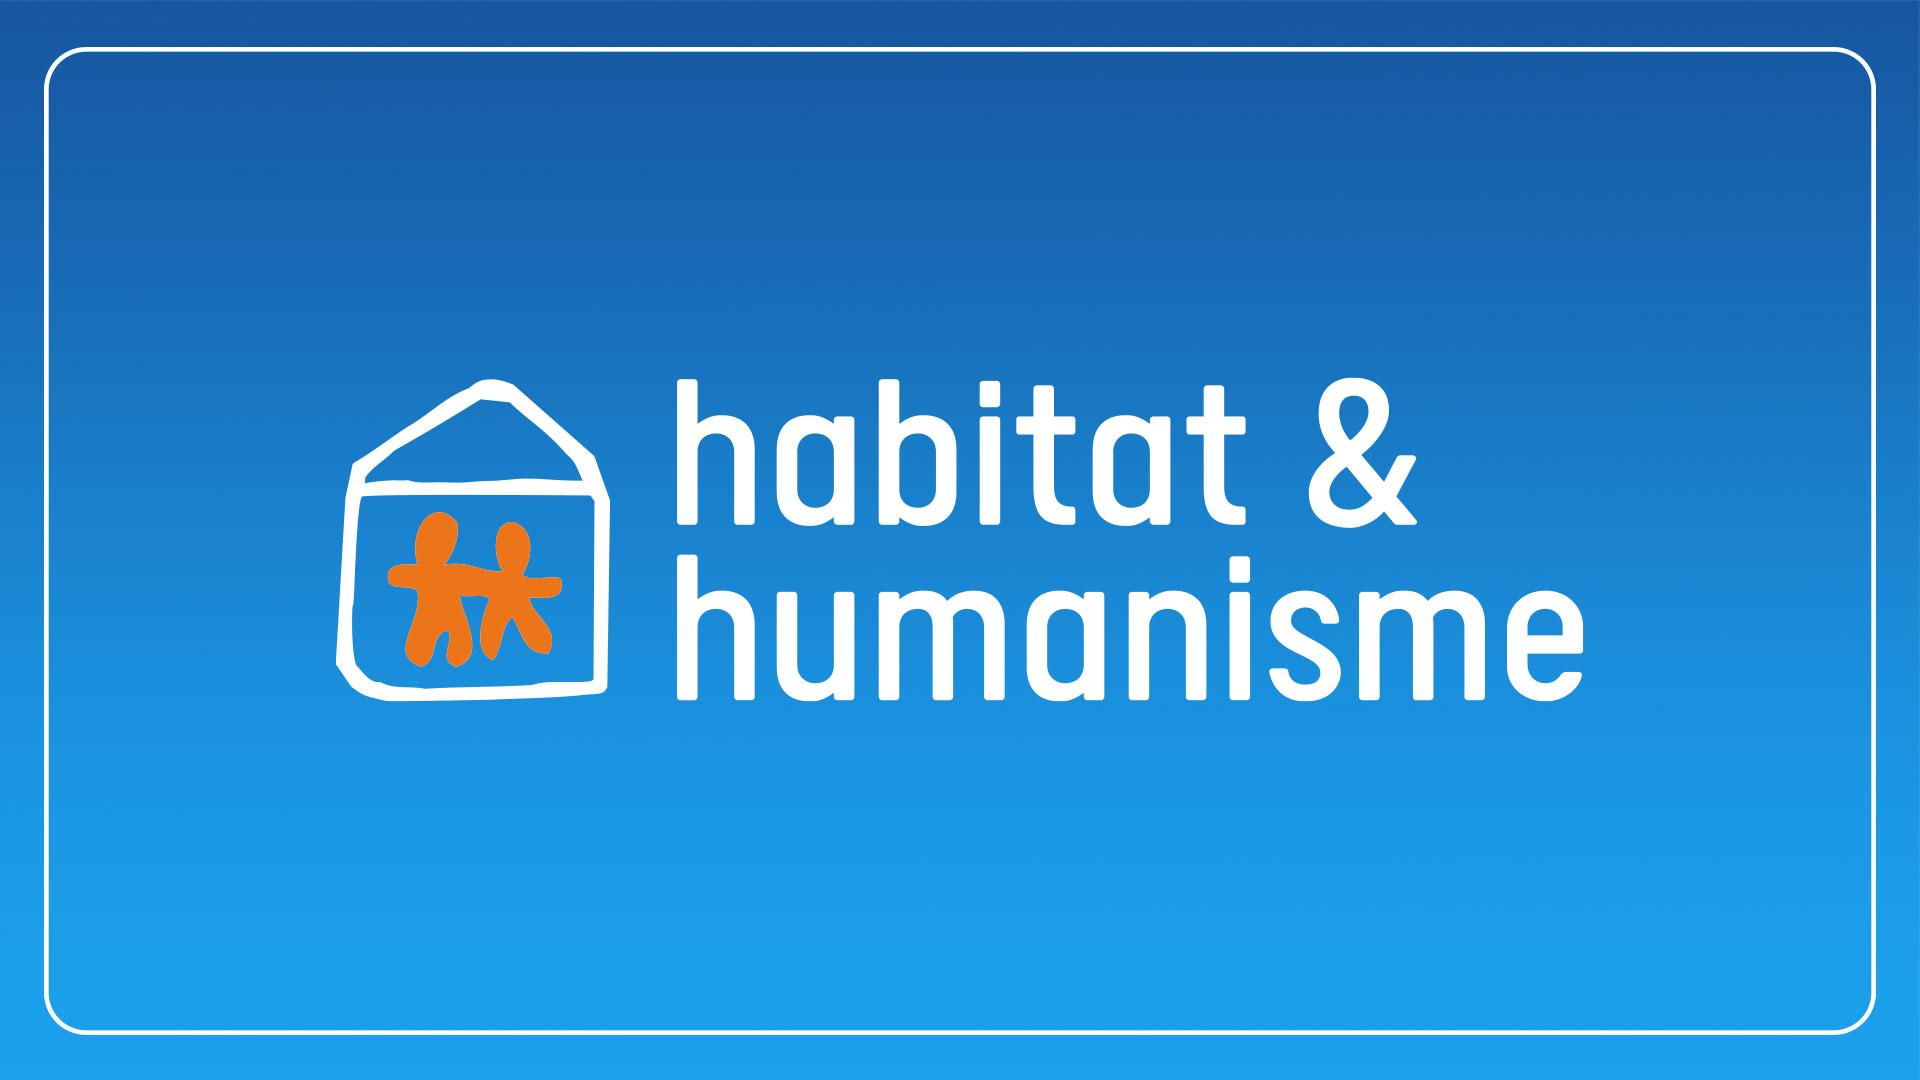 Chronique Habitat et Humanisme